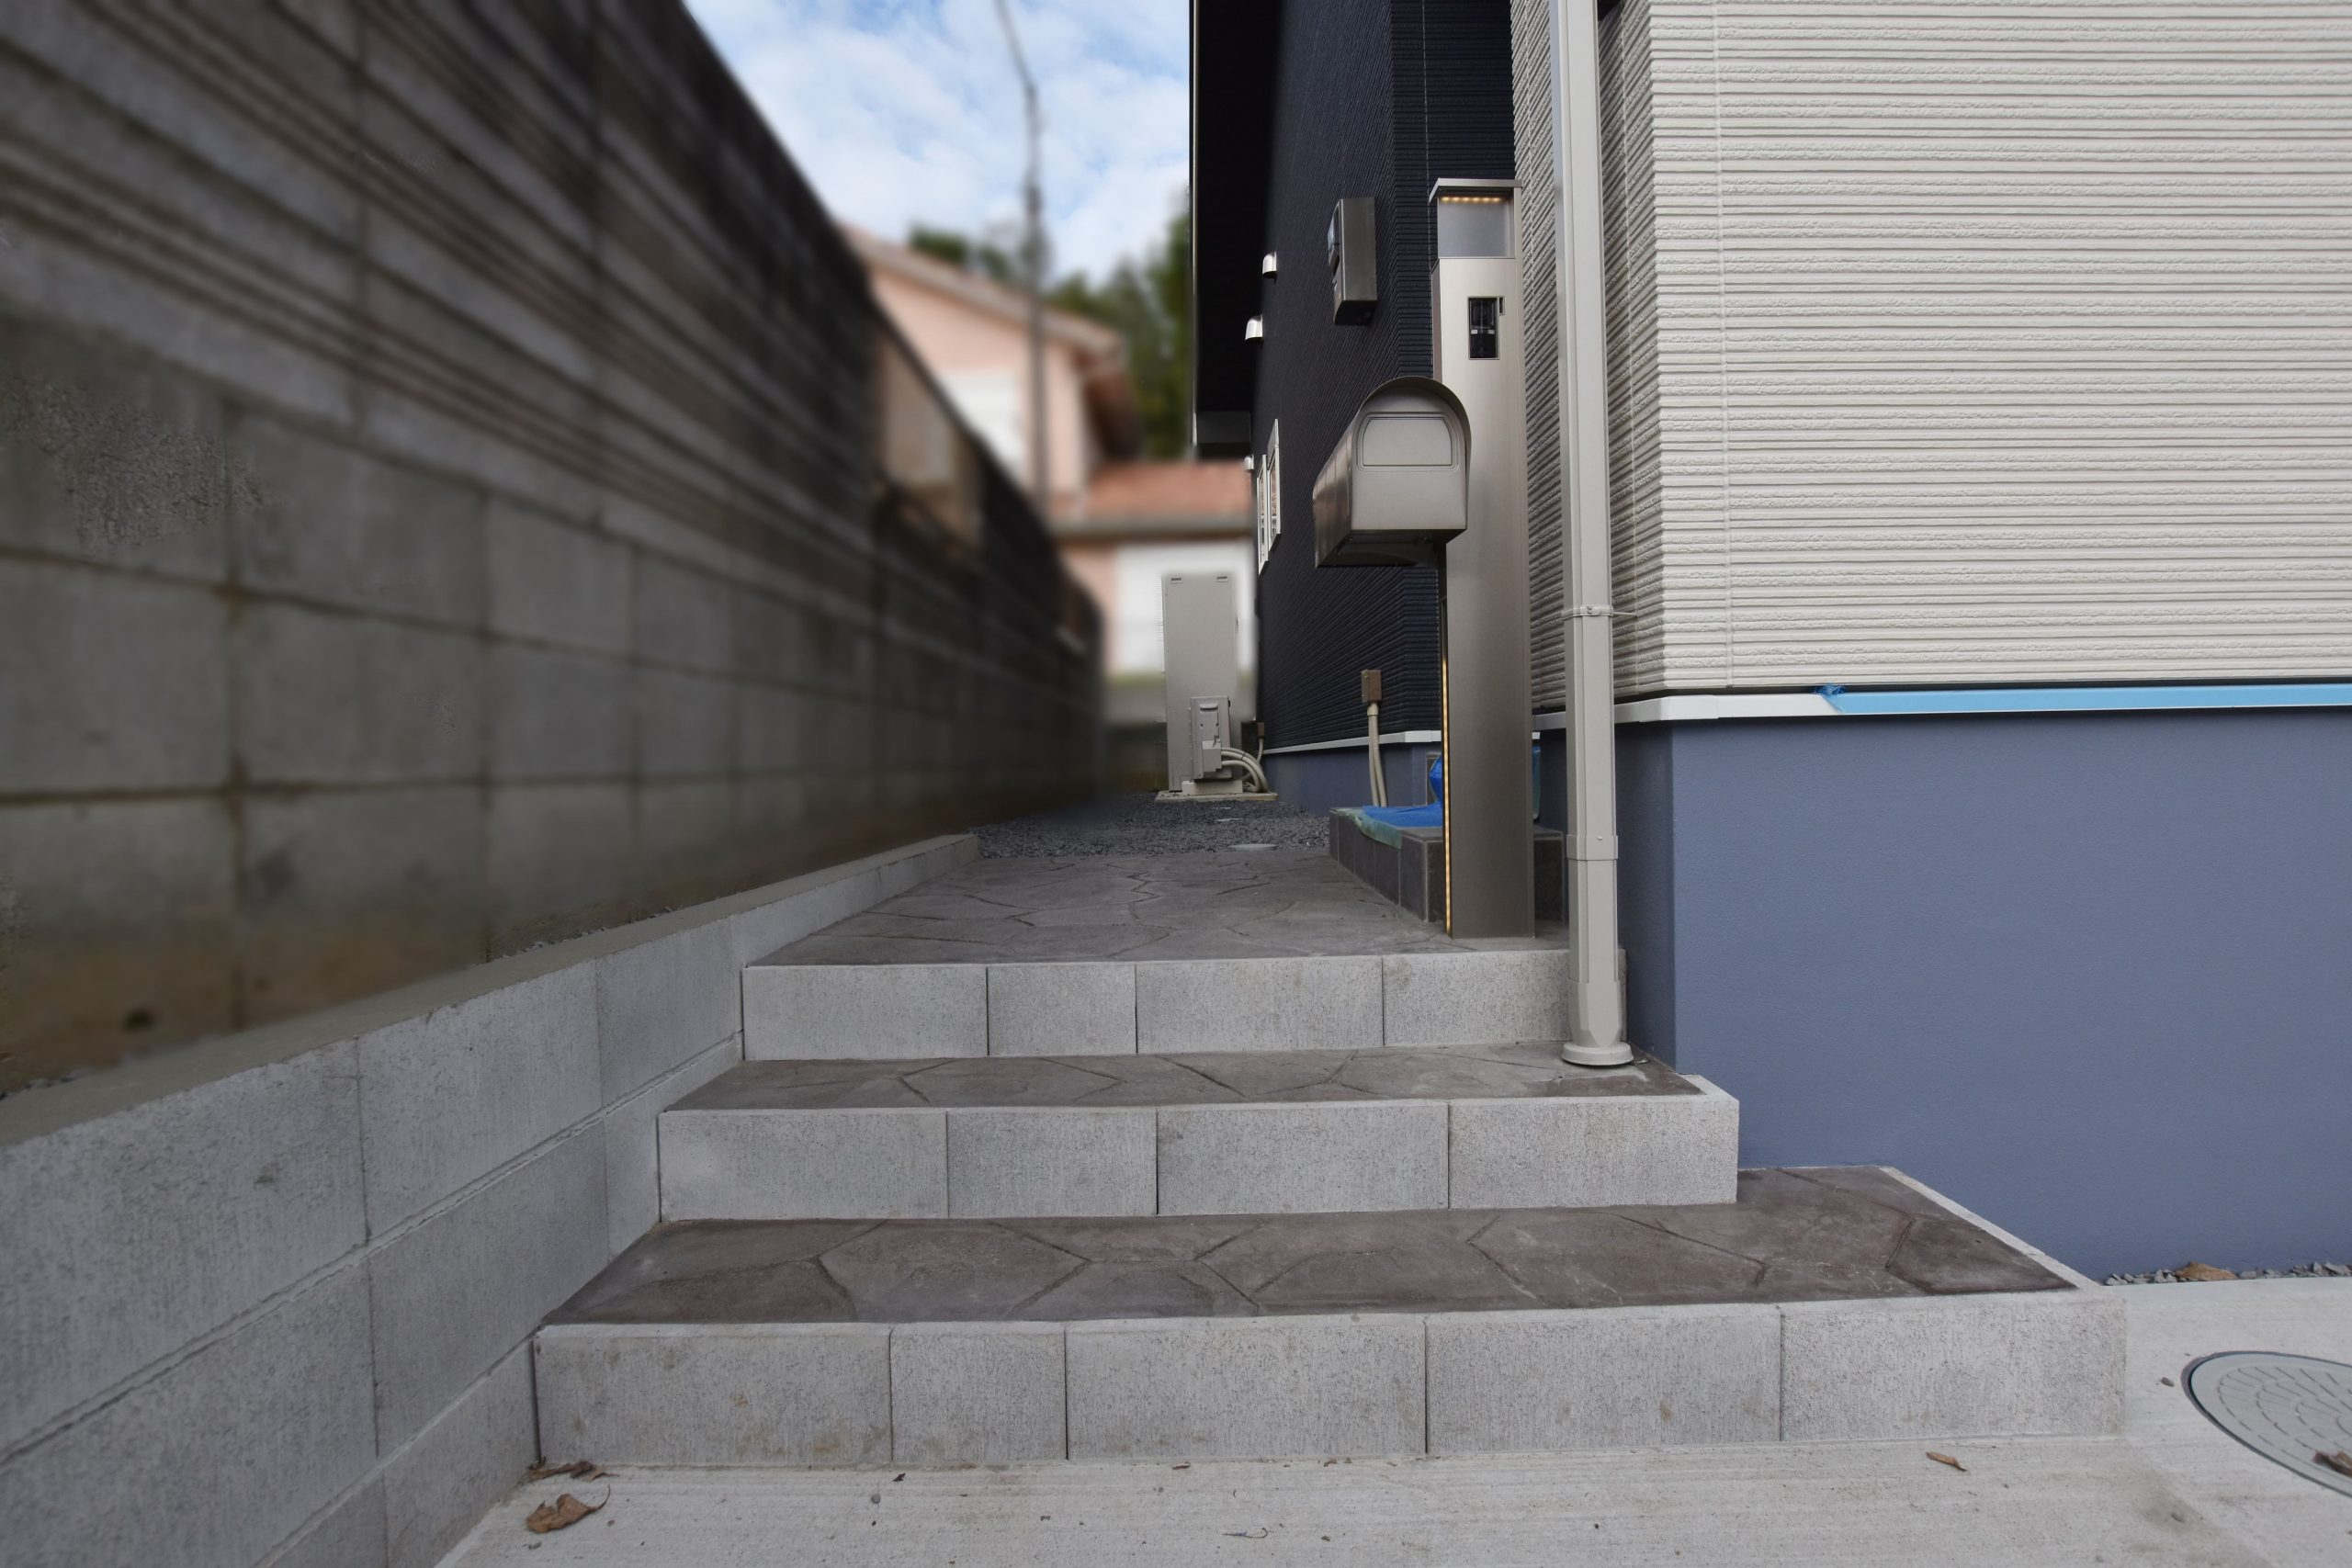 シンプルなブロック階段をスタンプコンクリートで装飾